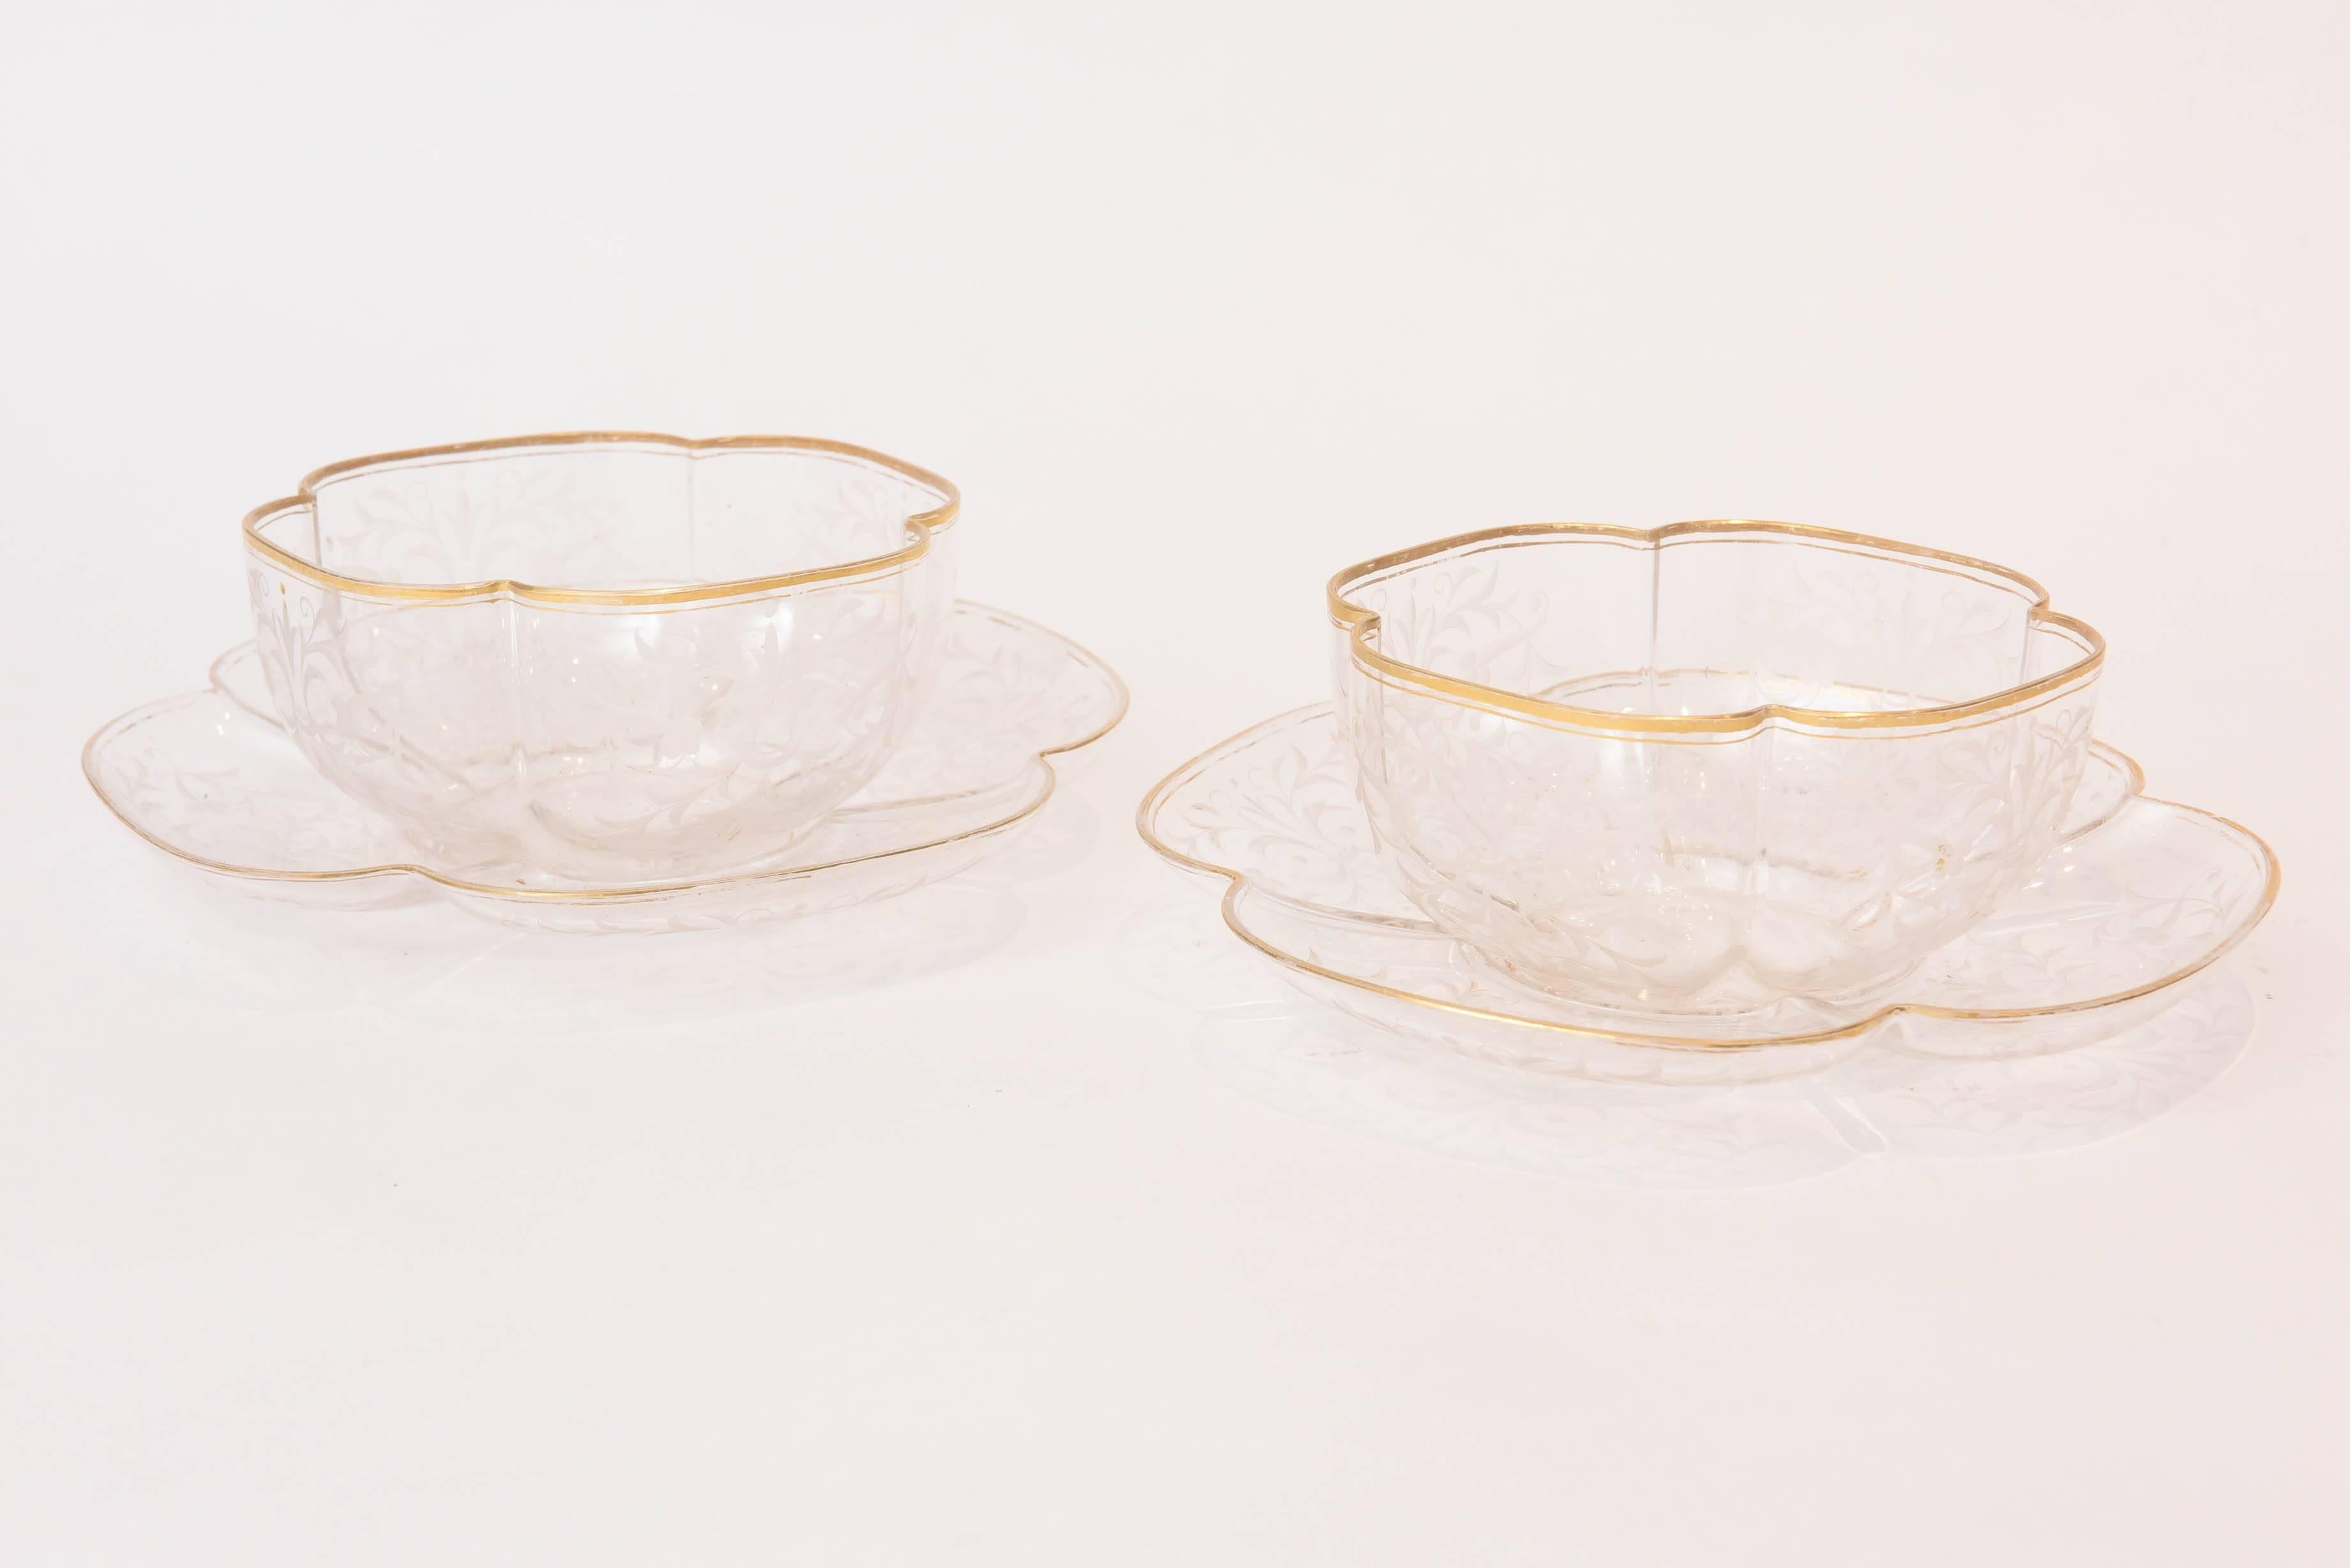 Ten Exquisite Sets of Antique Moser Quatre Foil Bowls with Underplates 1